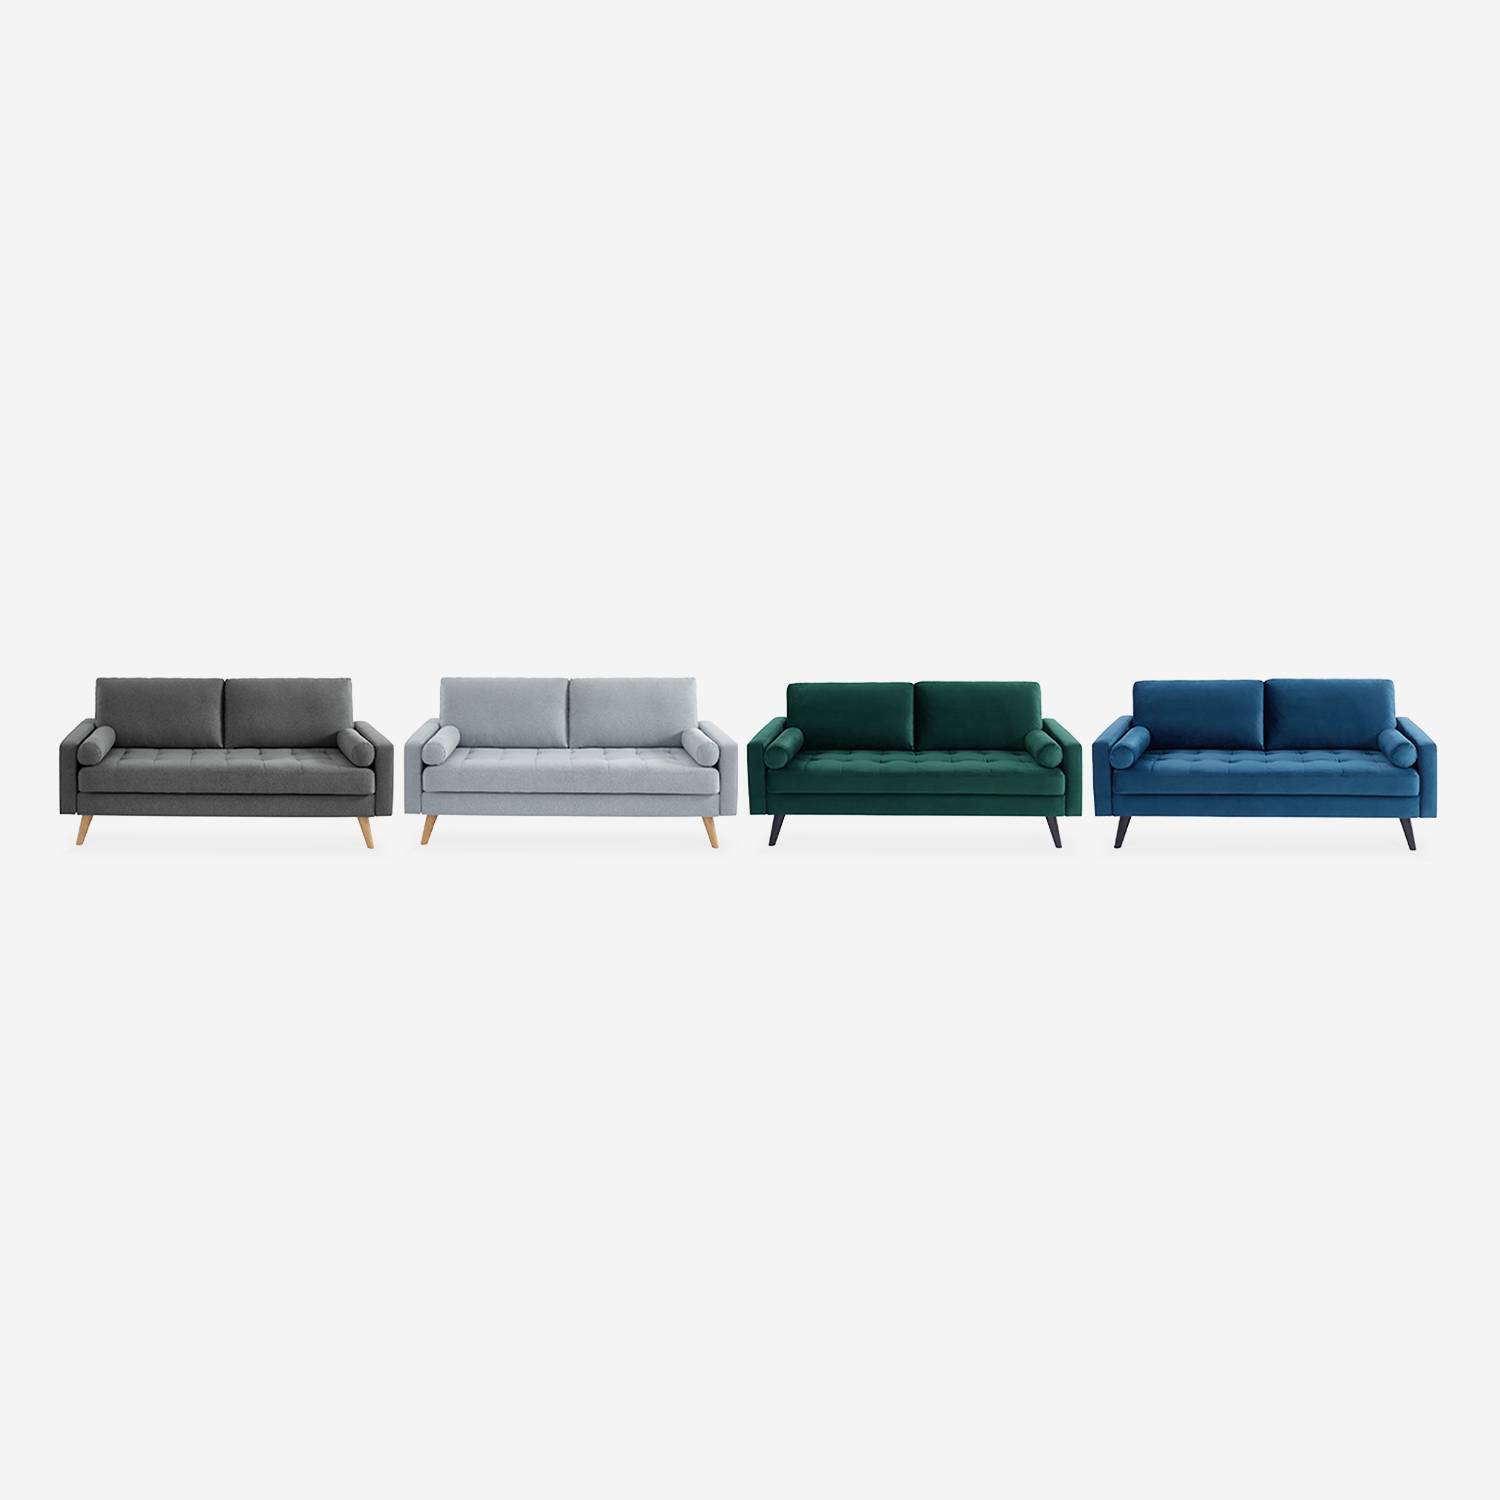 3-sitziges skandinavisches Sofa aus englischem grünem Samt, schwarze Holzbeine Photo6